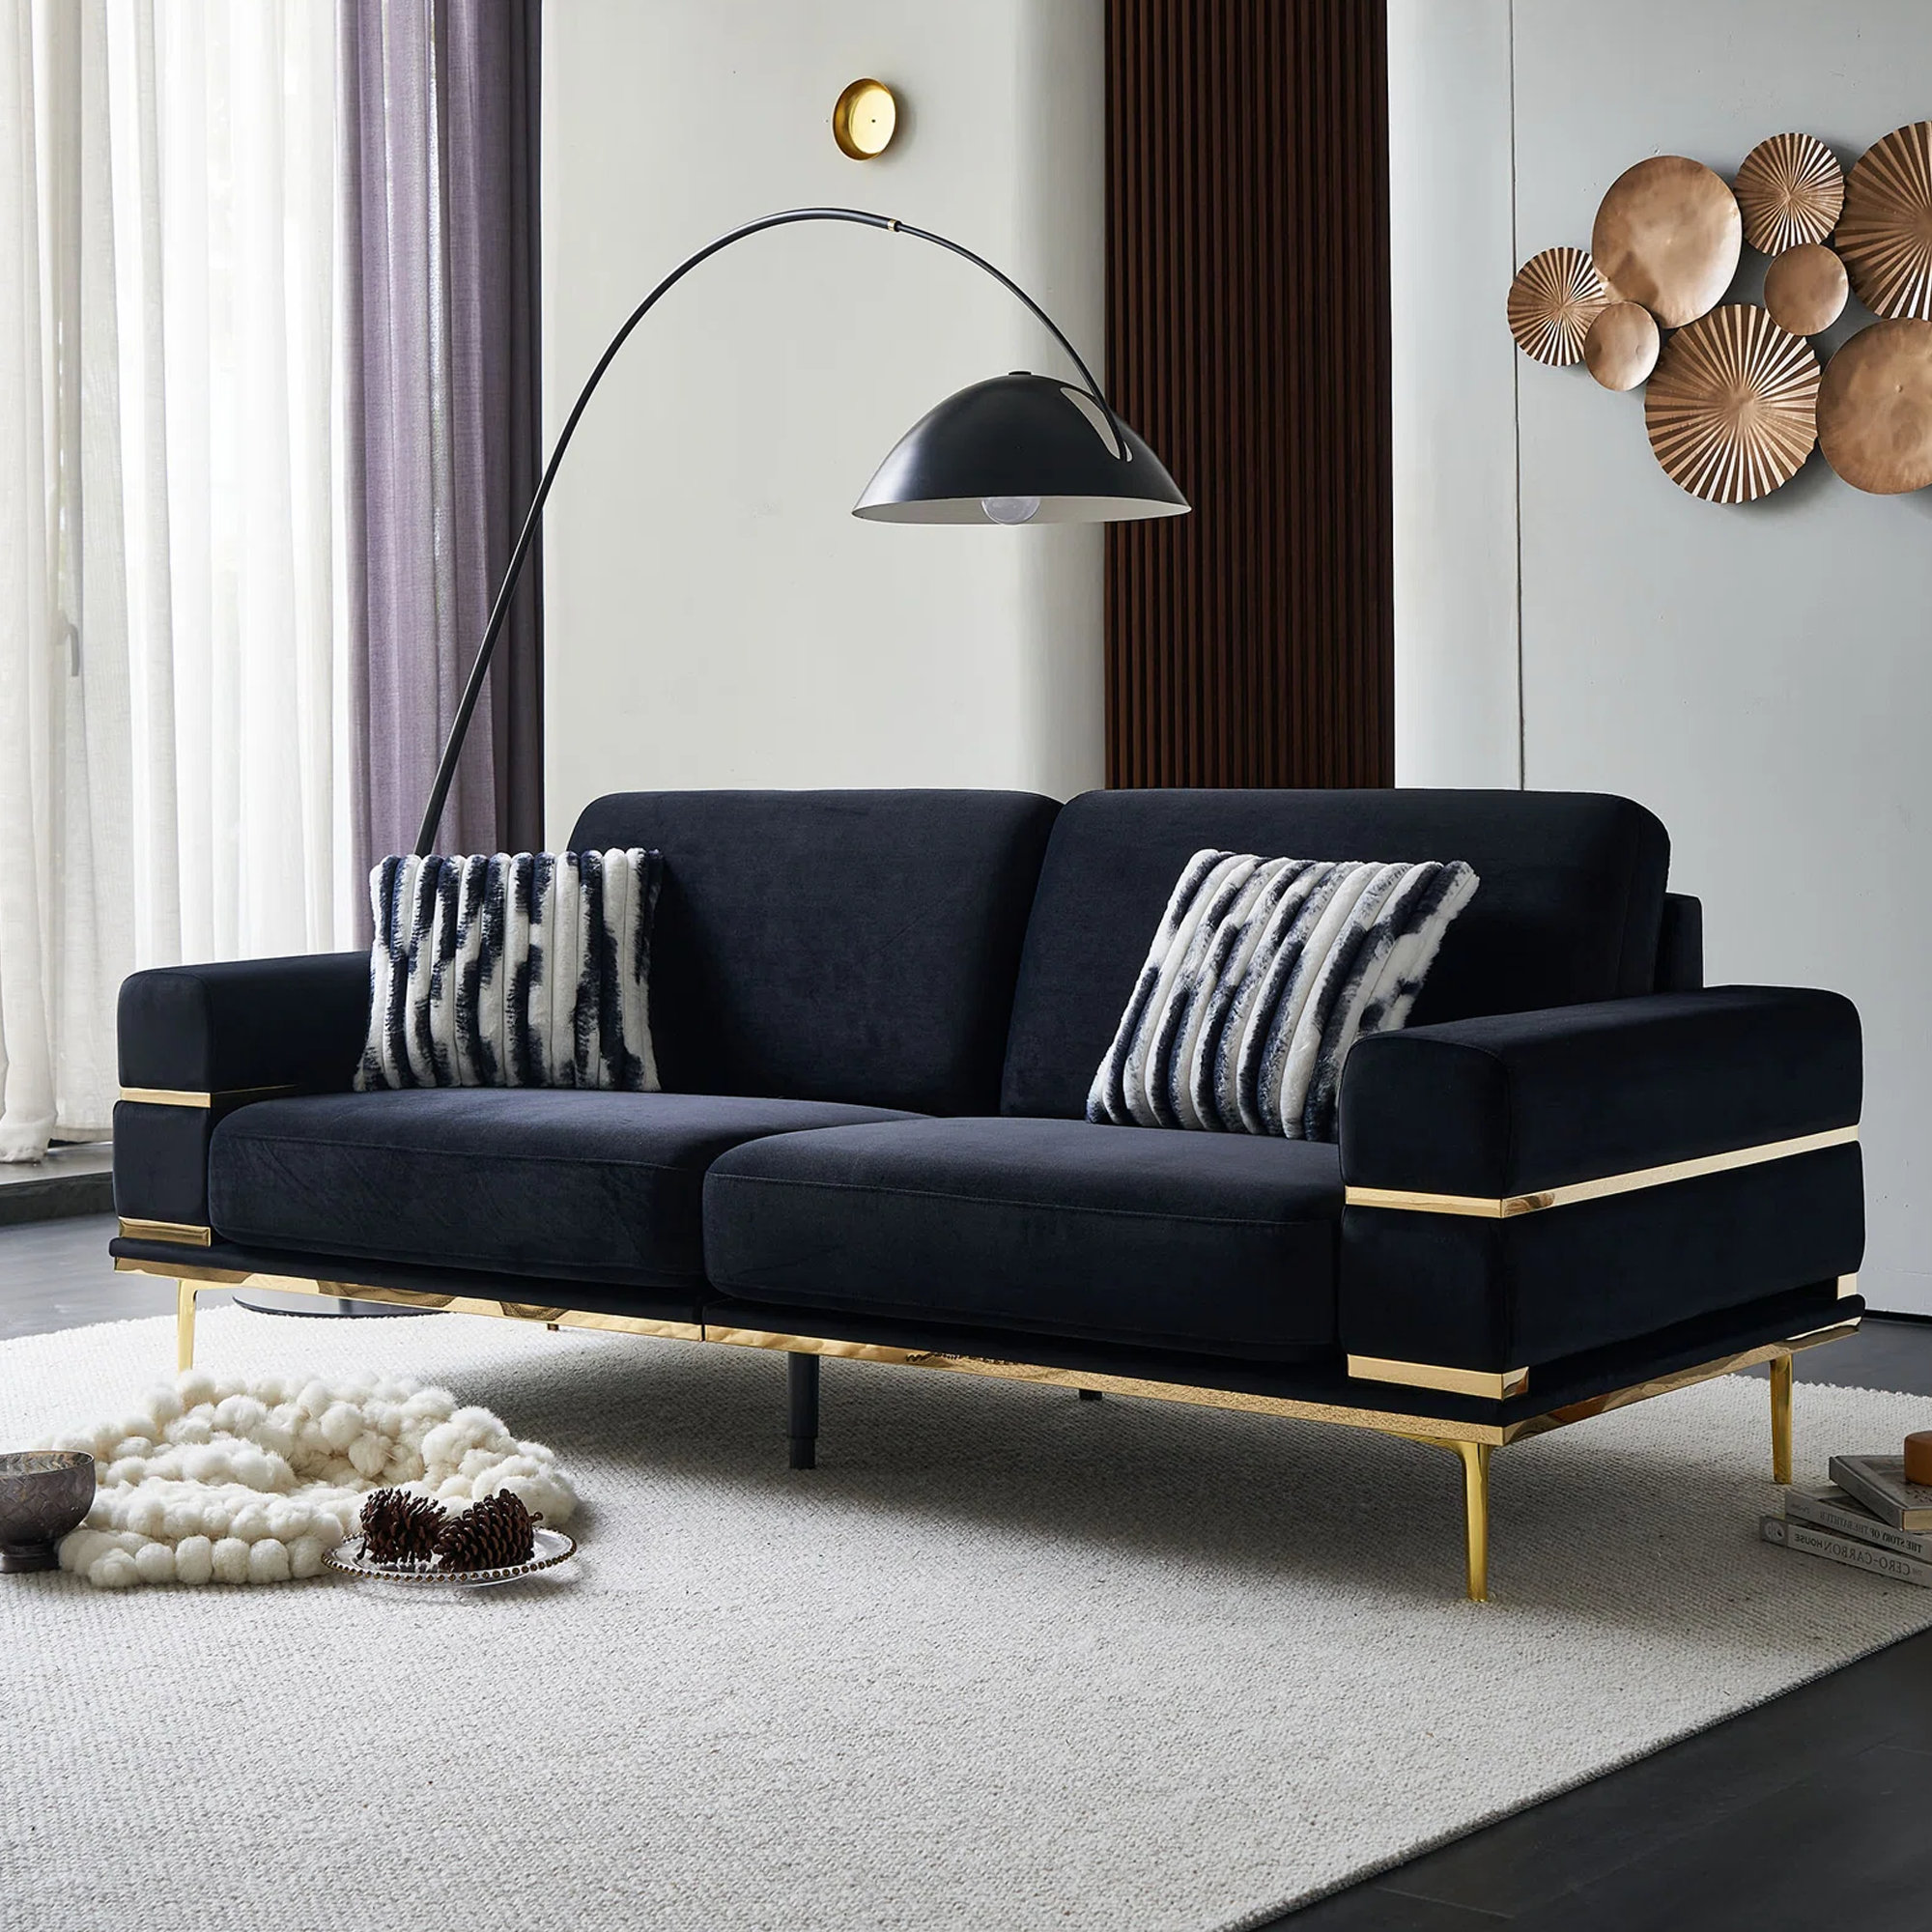 Mercer41 Klever 83'' Upholstered Sofa | Wayfair